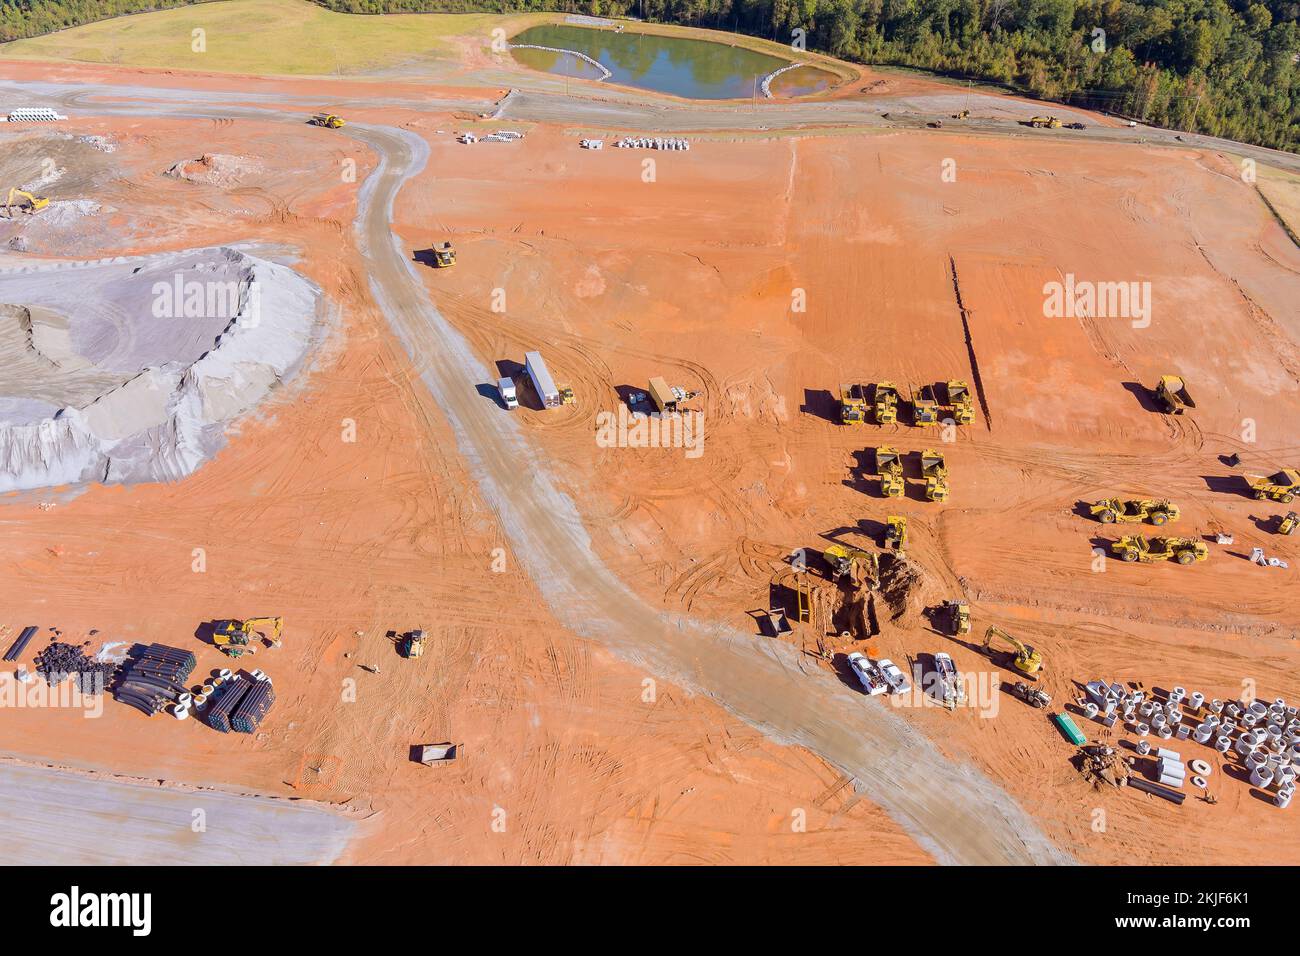 Vue panoramique aérienne d'un grand chantier de construction en cours d'utilisation équipement de terrassement machines lourdes et tracteurs Banque D'Images